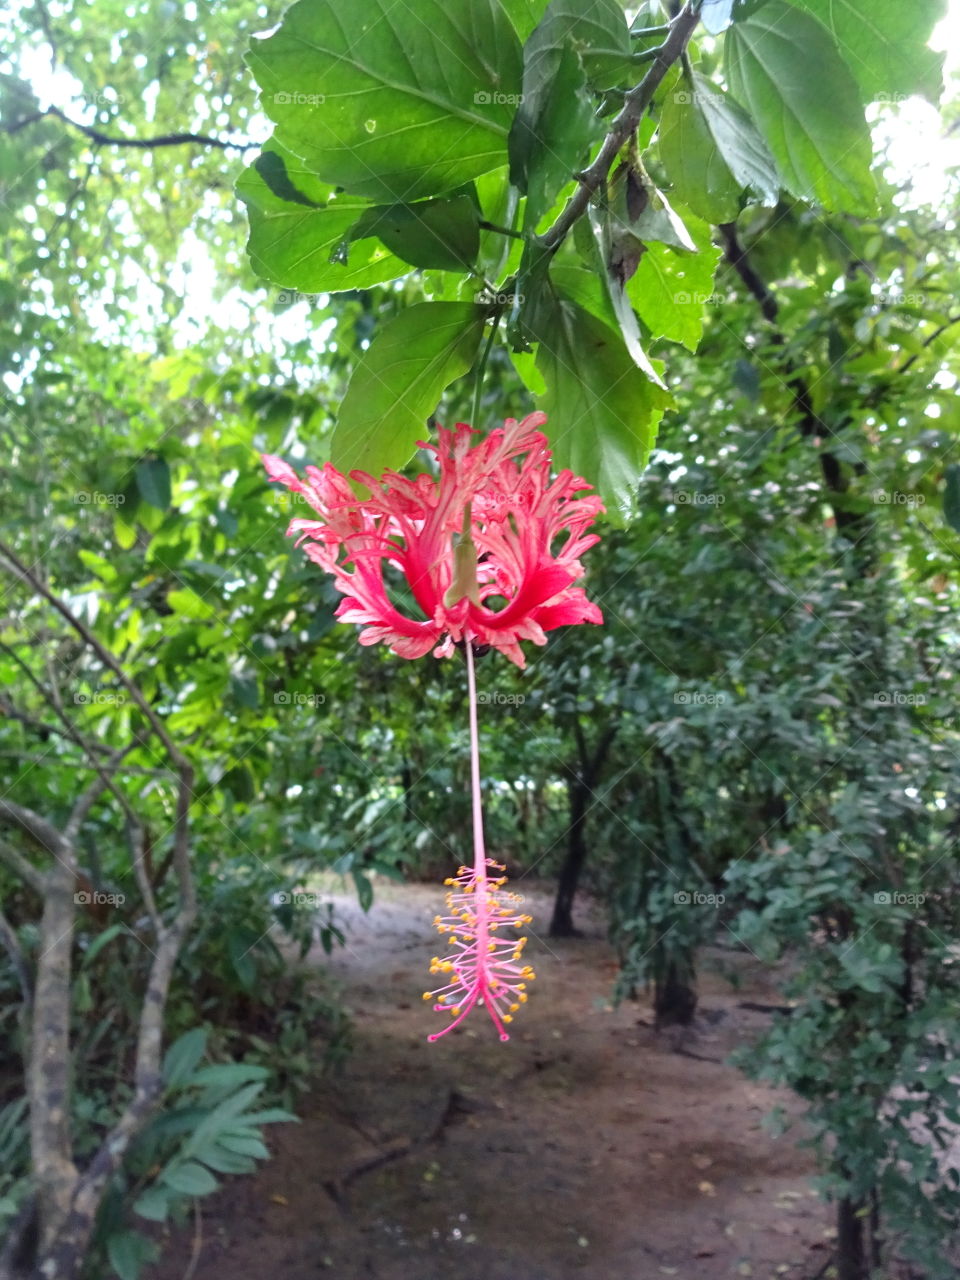 Exotic flora